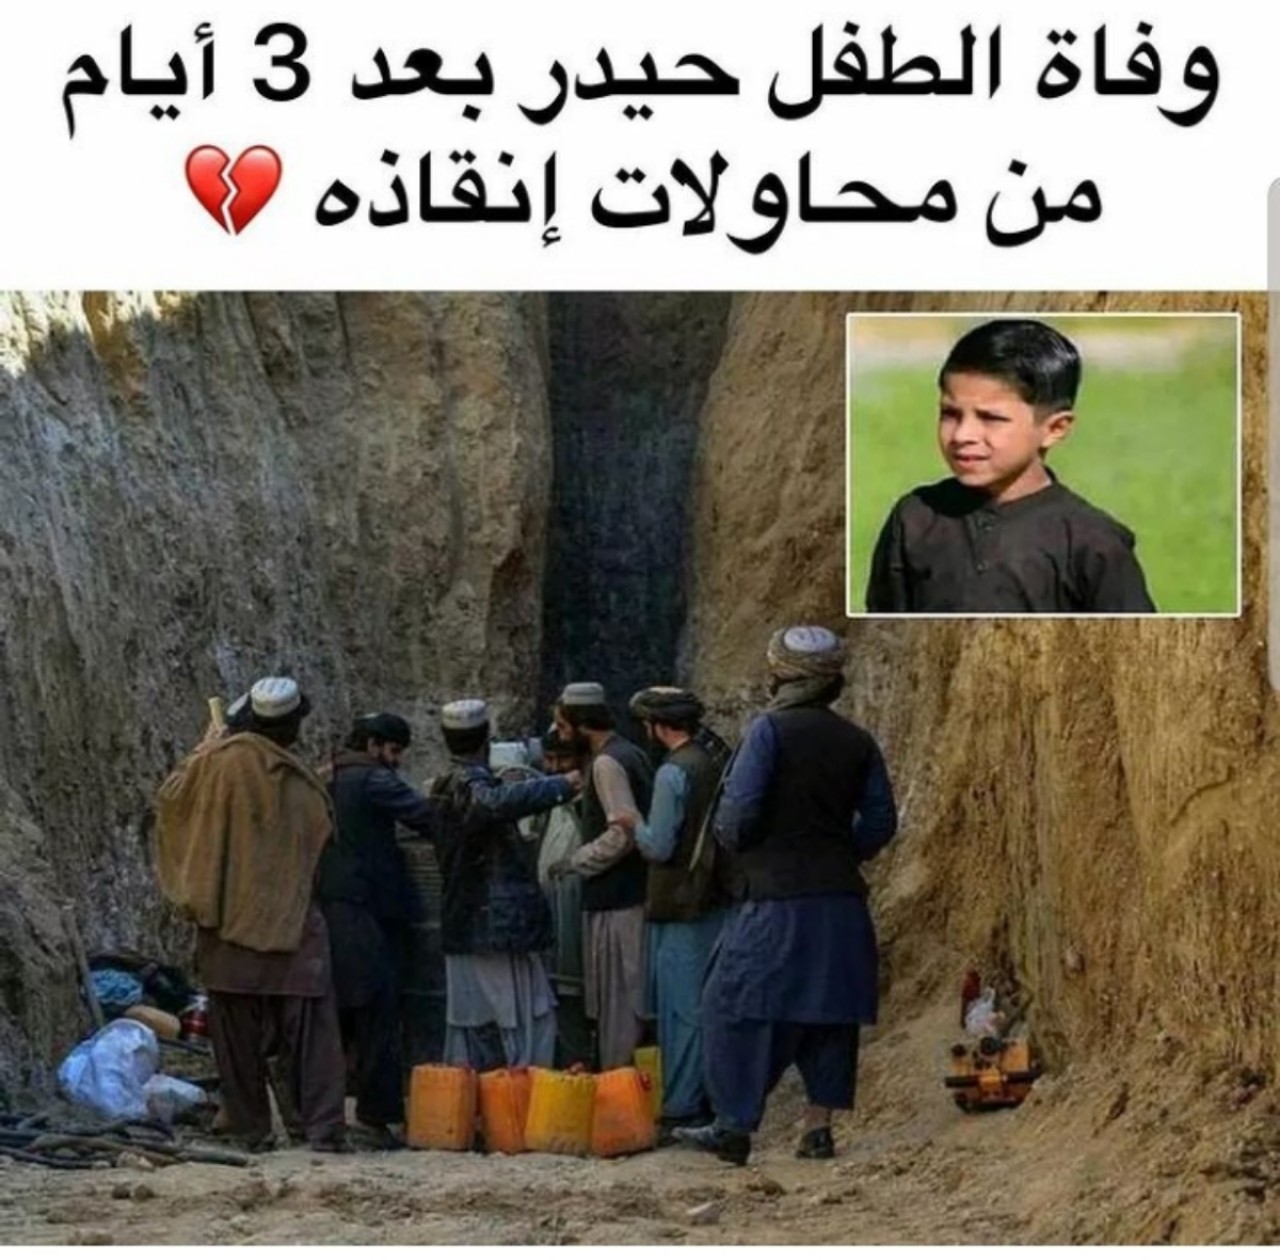 وفاة الطفل الأفغاني "حيدر" داخل ثقب بئر في زابول